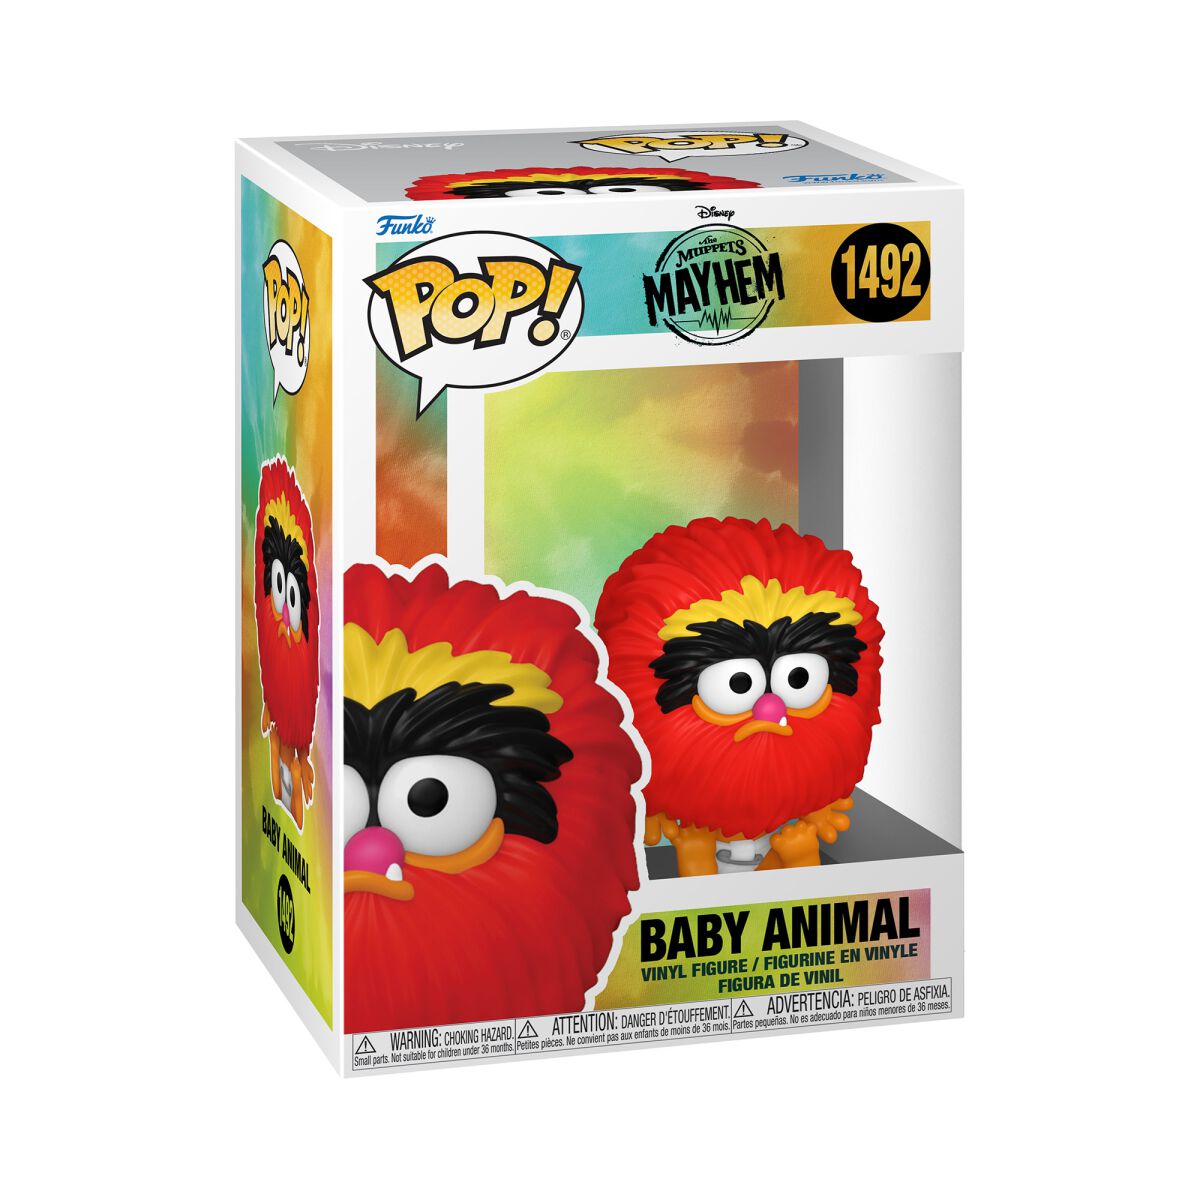 Die Muppets - The Muppets Mayham - Baby Animal Vinyl Figur 1492 - Funko Pop! Figur - Funko Shop Deutschland - Lizenzierter Fanartikel